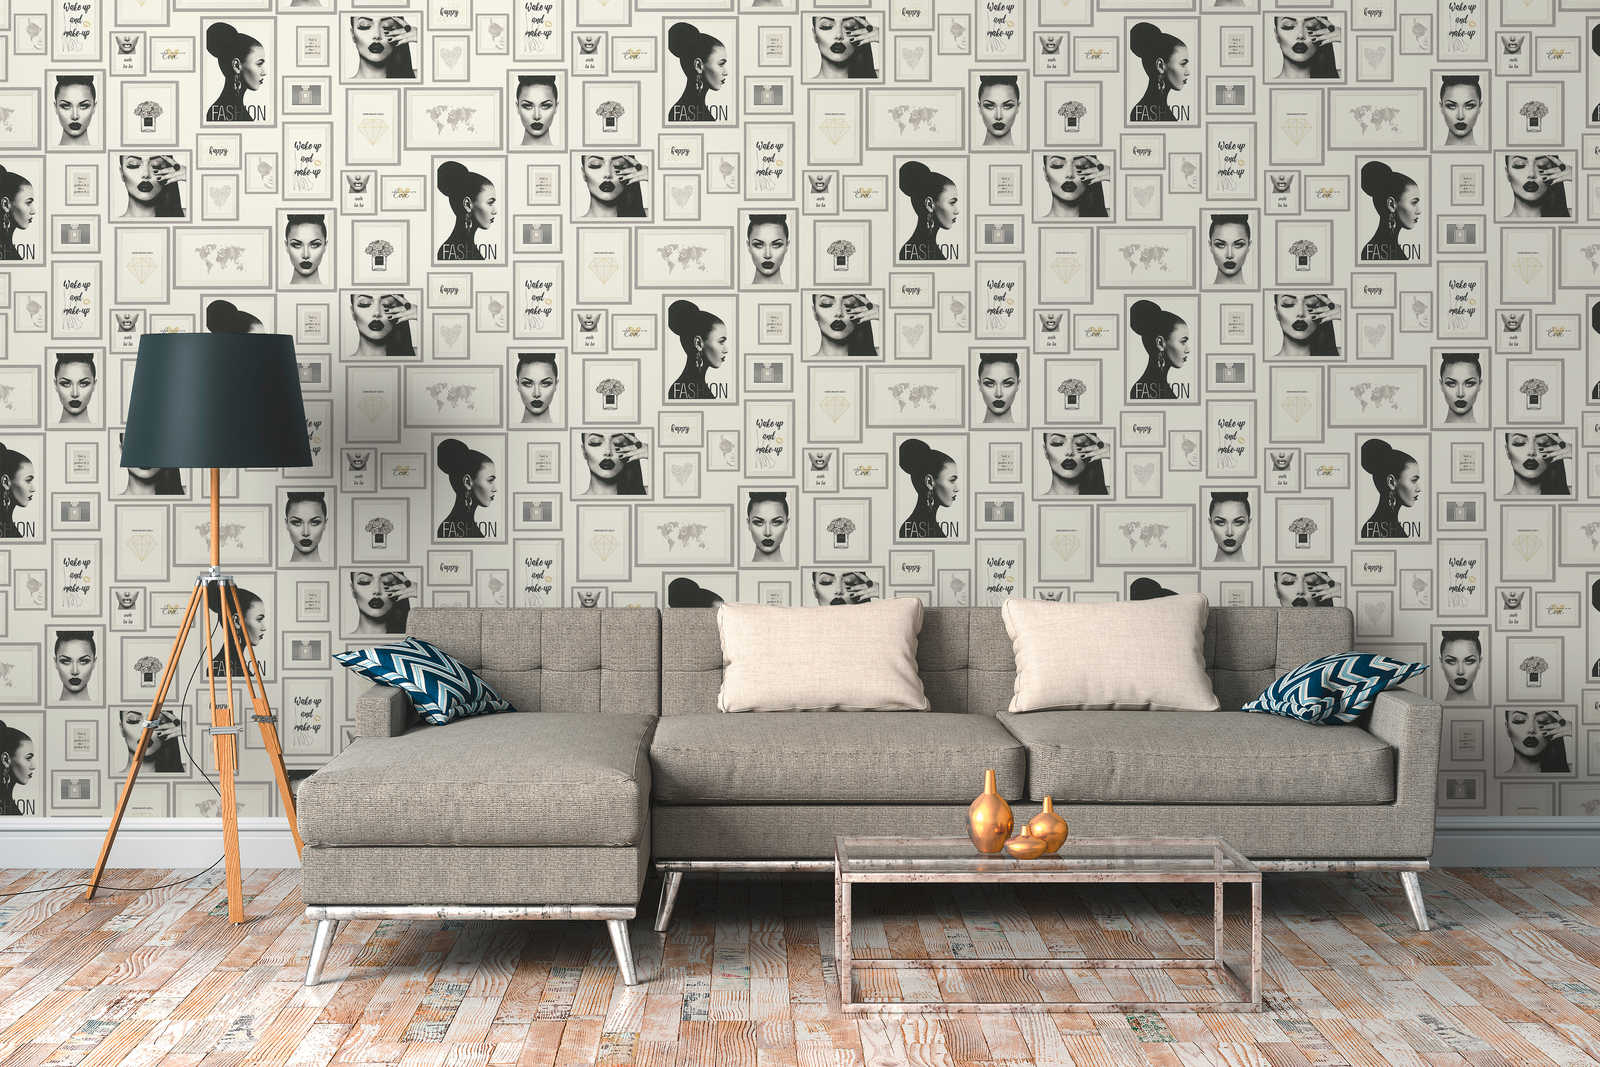             Papier peint Fashion Design avec décorations murales - argent, noir, blanc
        